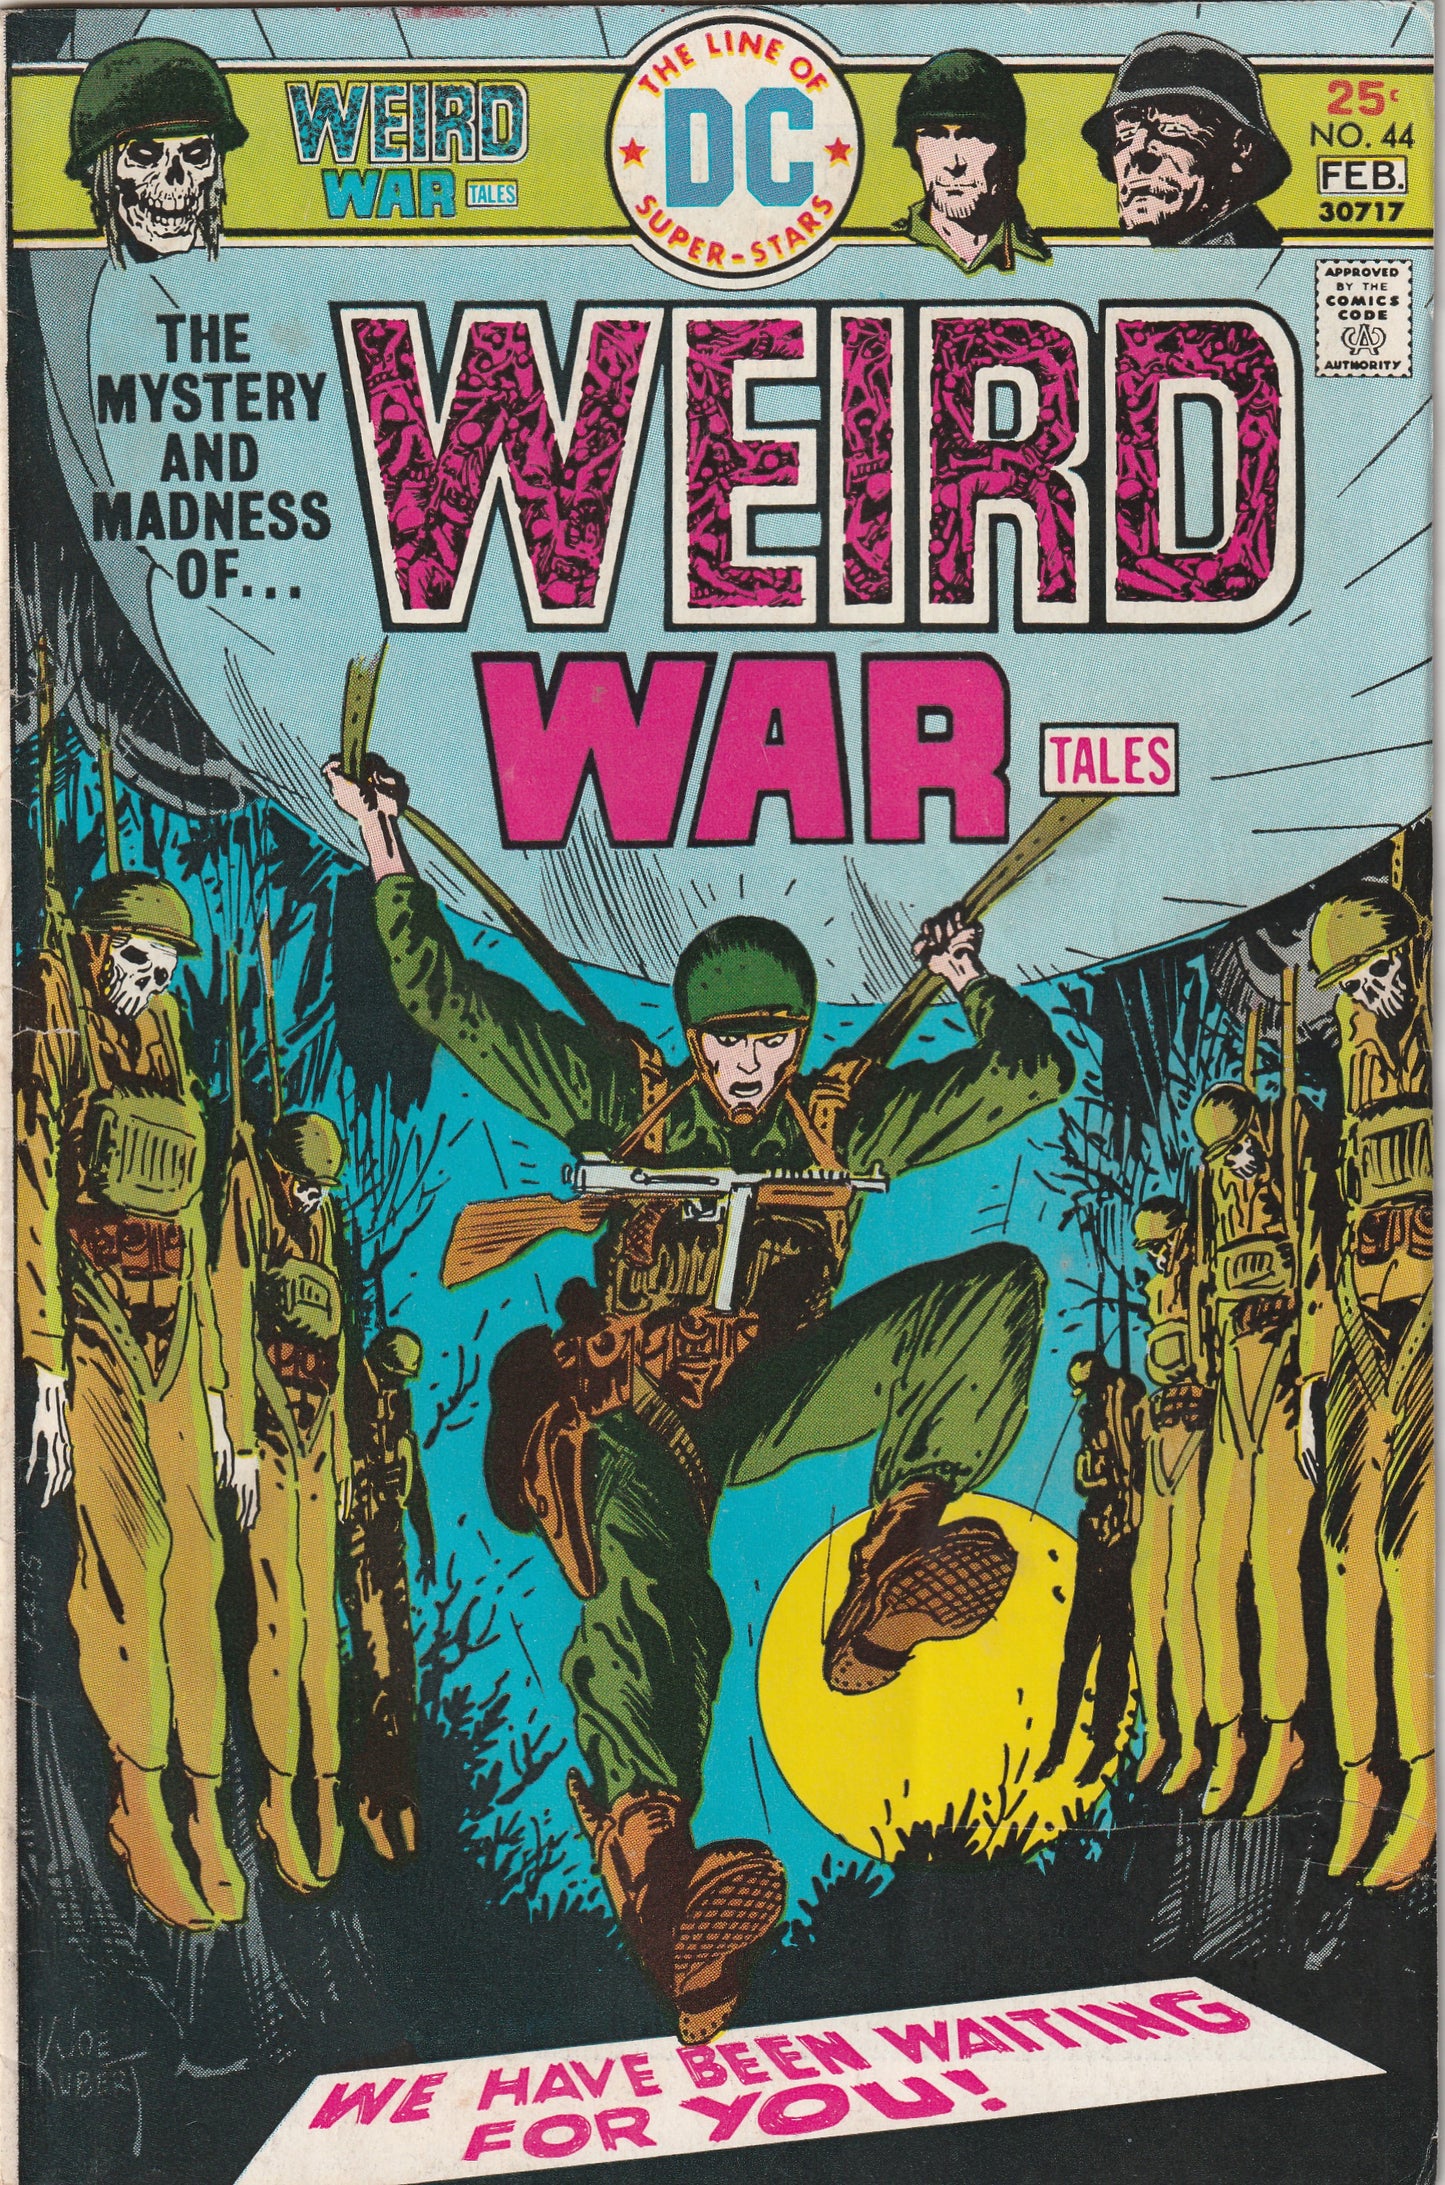 Weird War Tales #44 (1976) - Joe Kubert